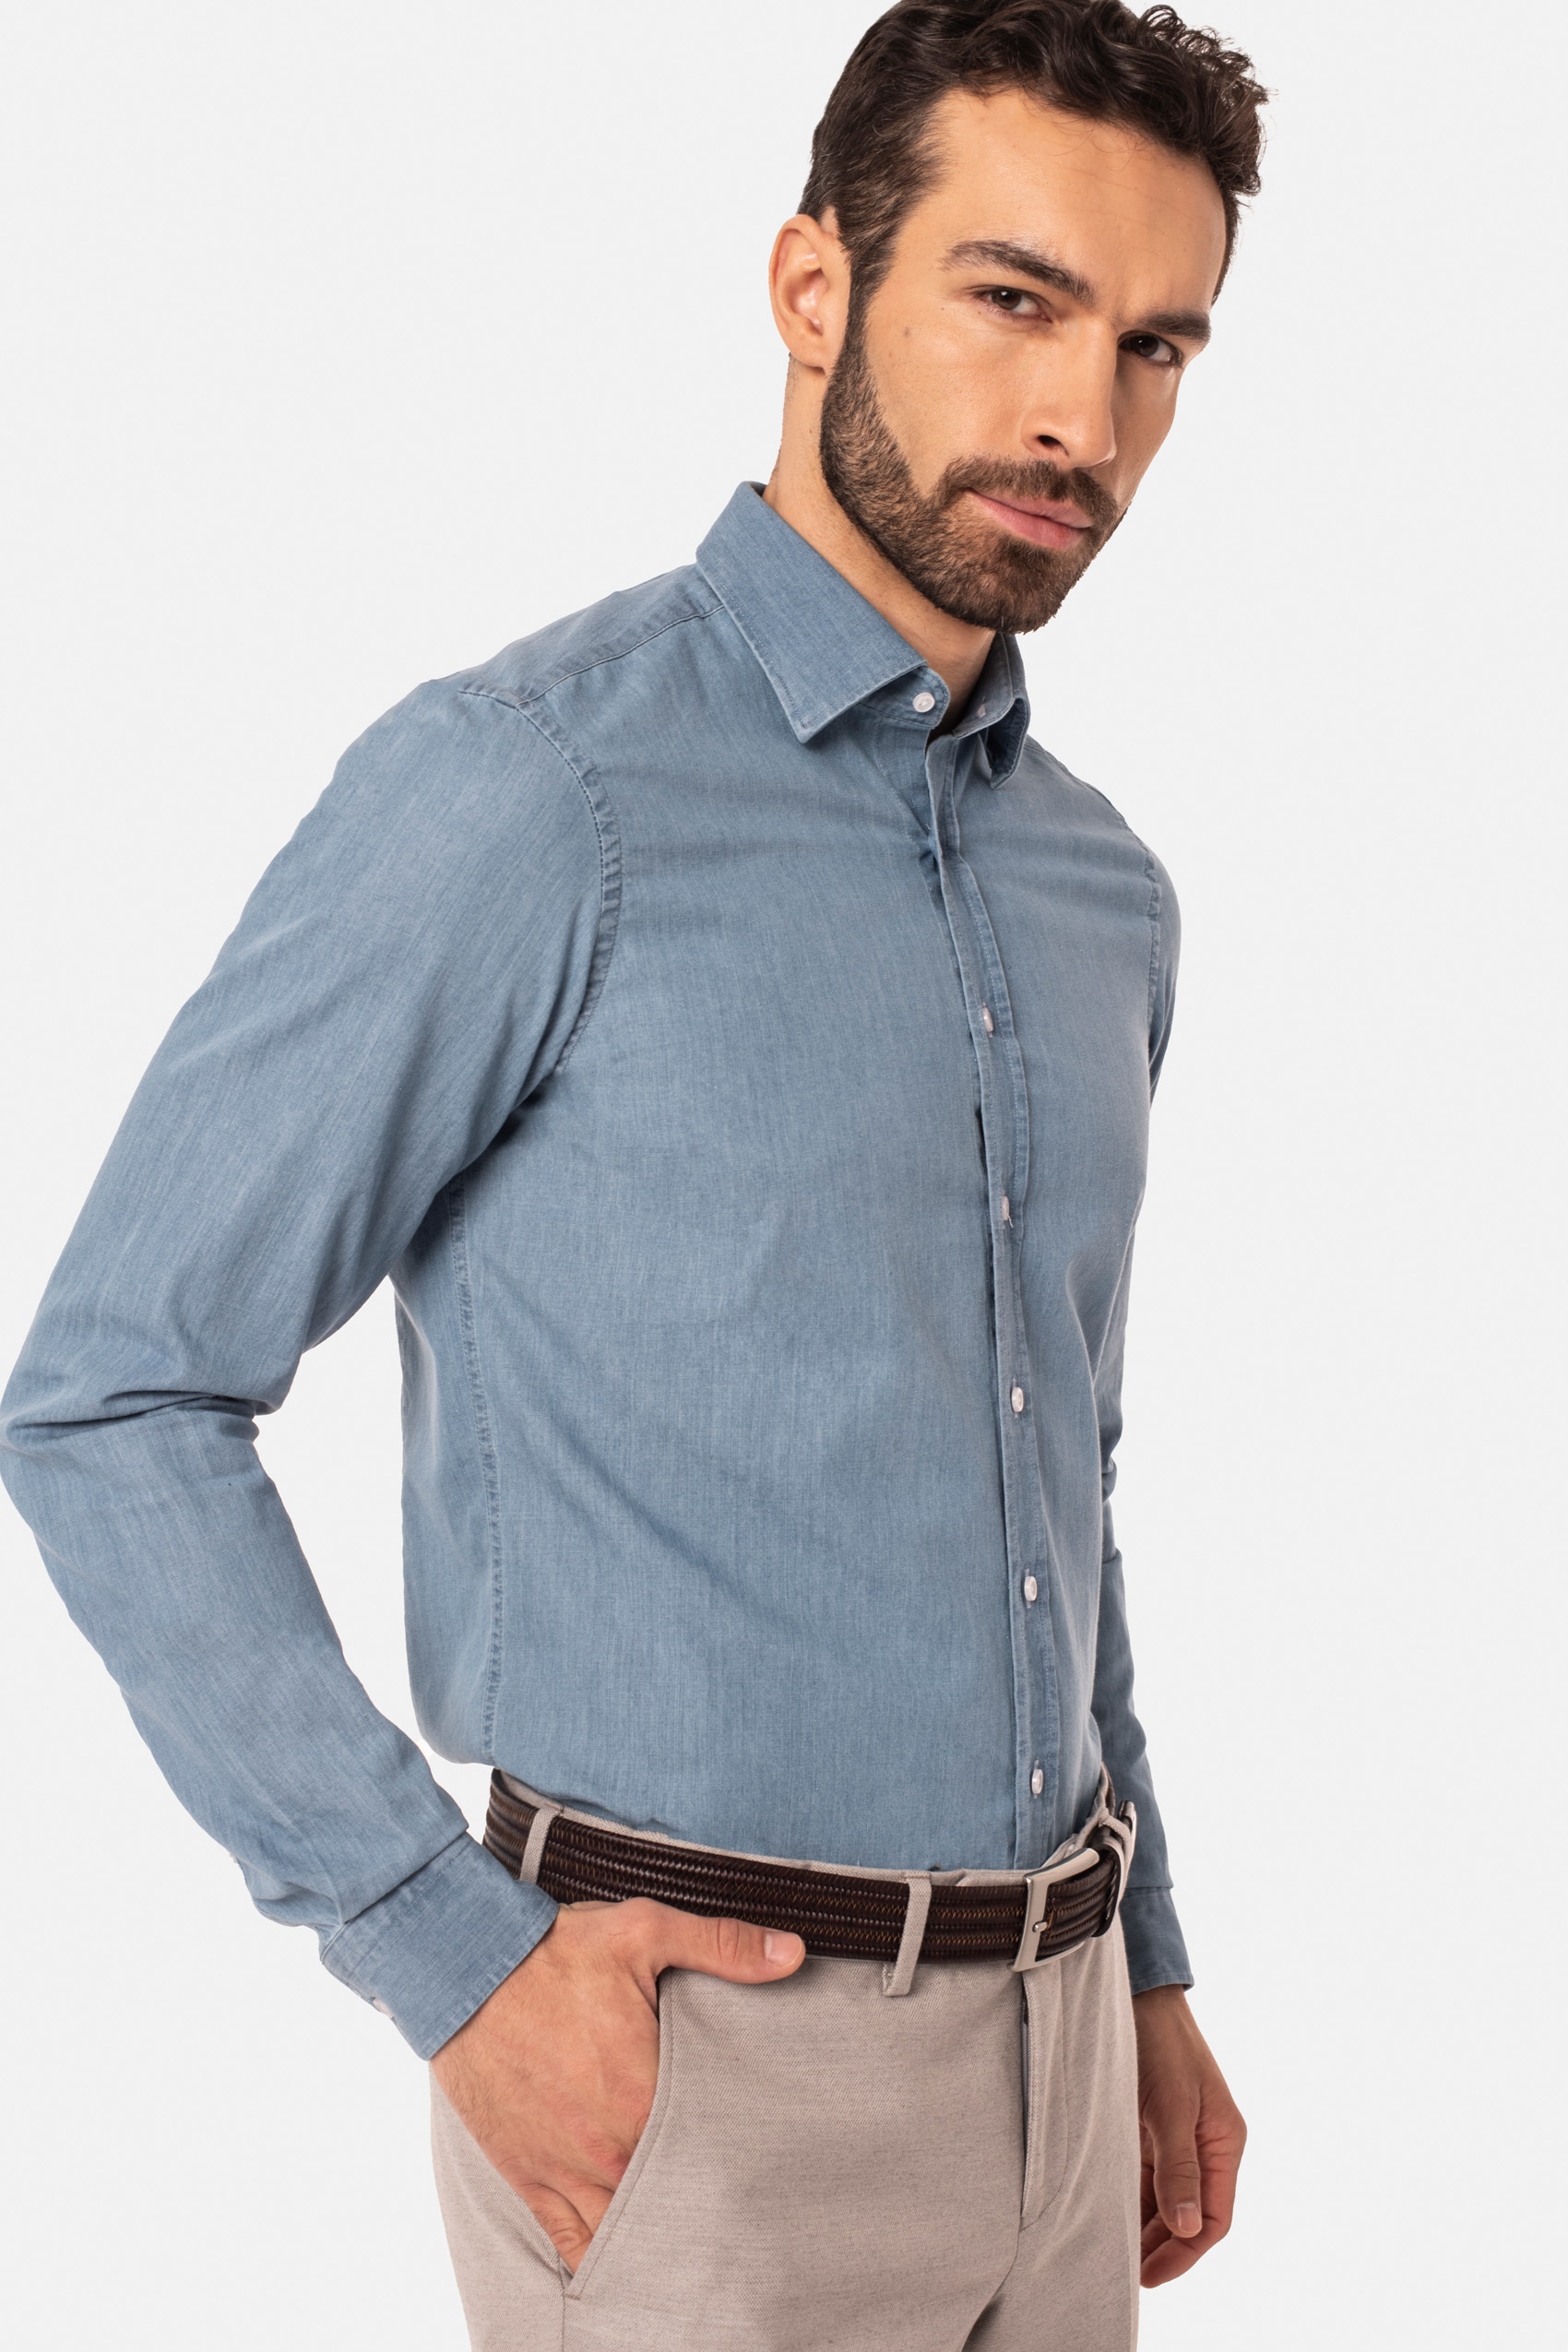 Model ubrany w jasnoniebieską koszulę z guzikami, jasne beżowe spodnie z brązowym paskiem